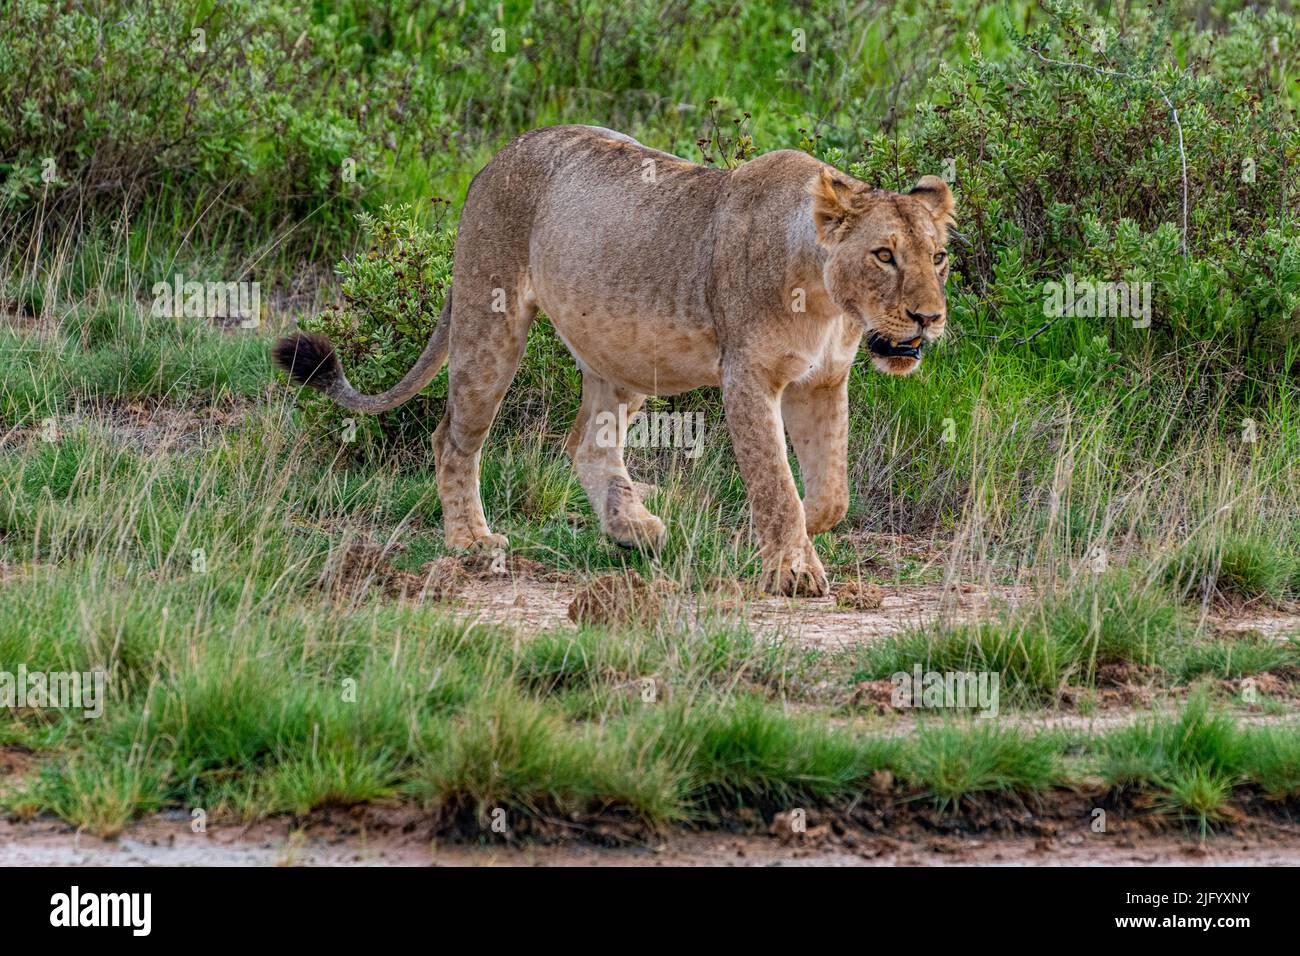 Lion (Panthera leo), Amboseli National Park, Kenya, East Africa, Africa Stock Photo